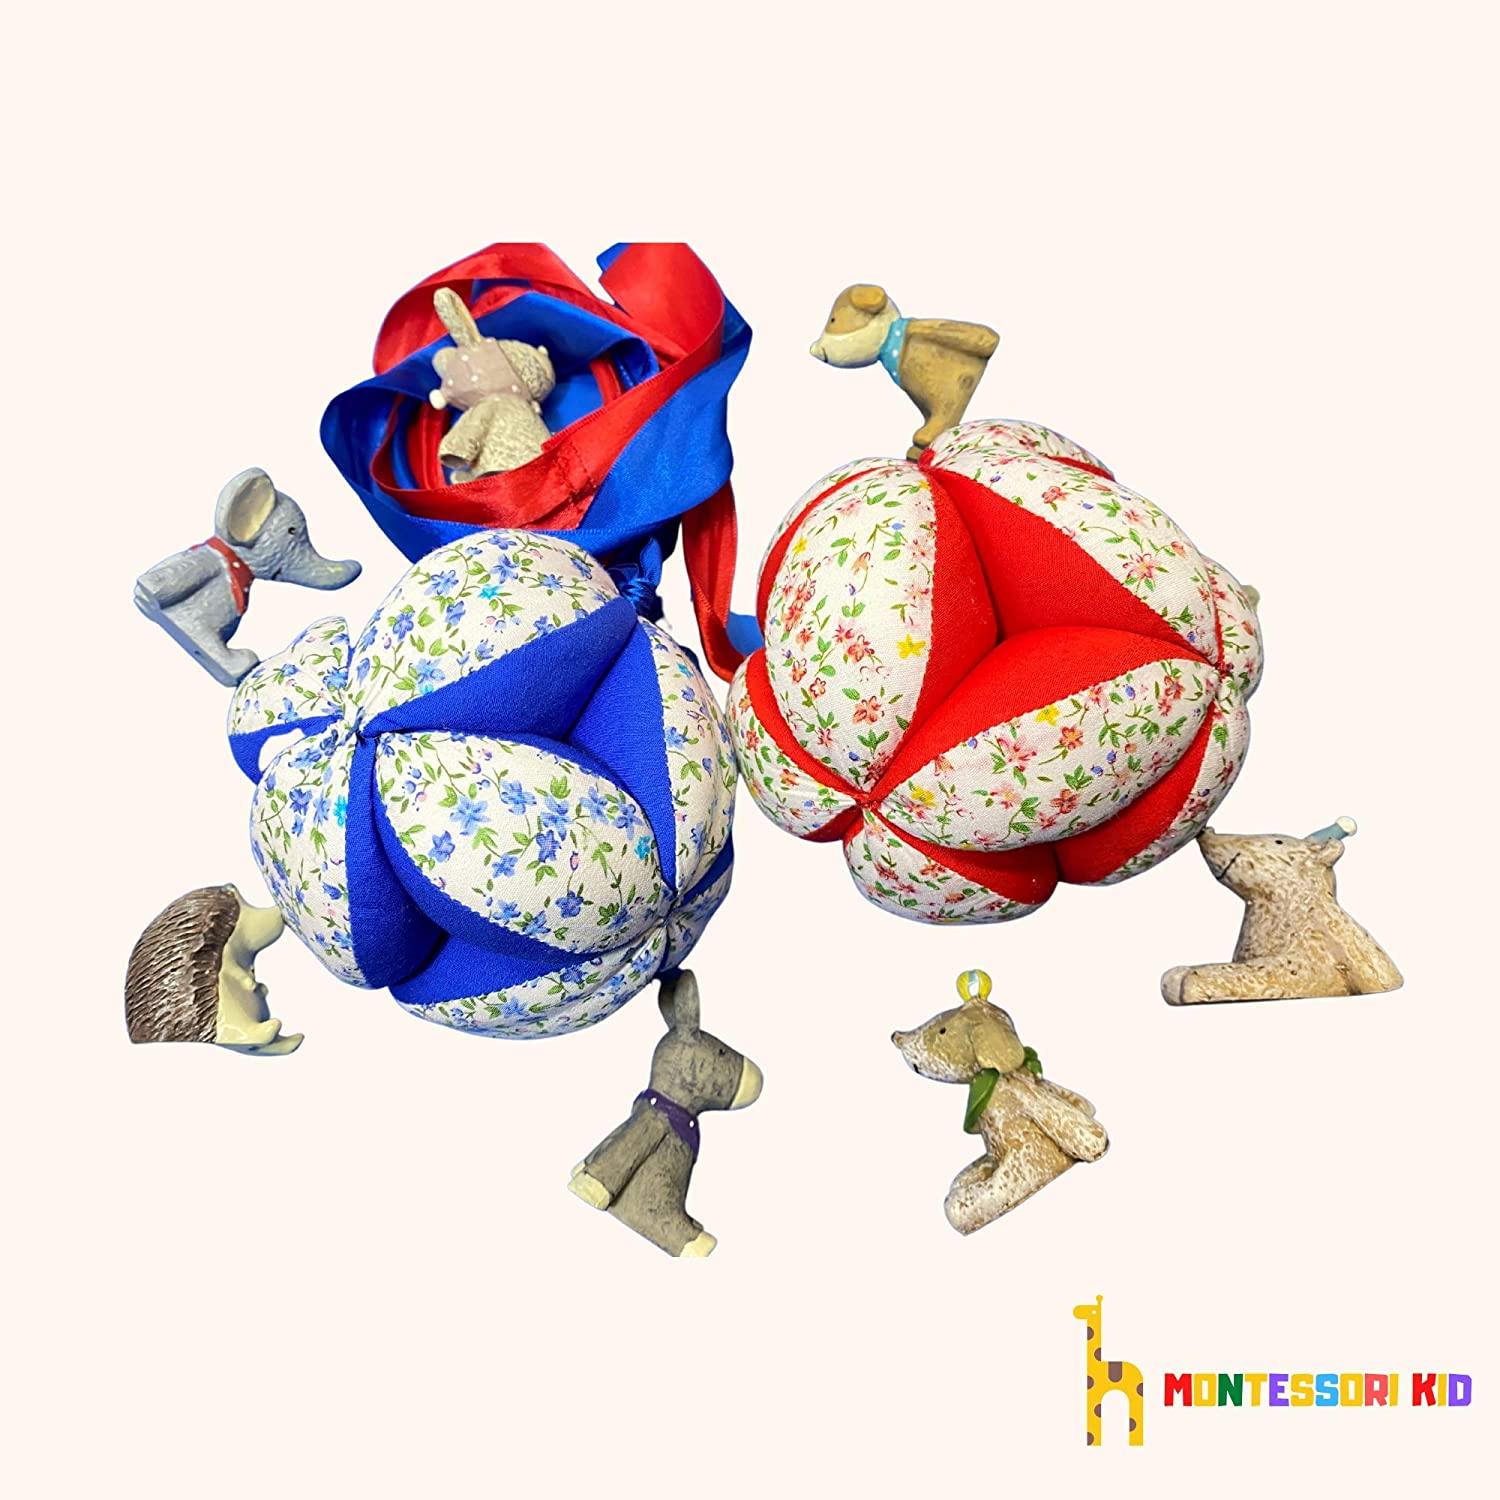 Montessori Ball Gripper Ball Puzzle Ball (red / blue) - Montessori kid shop